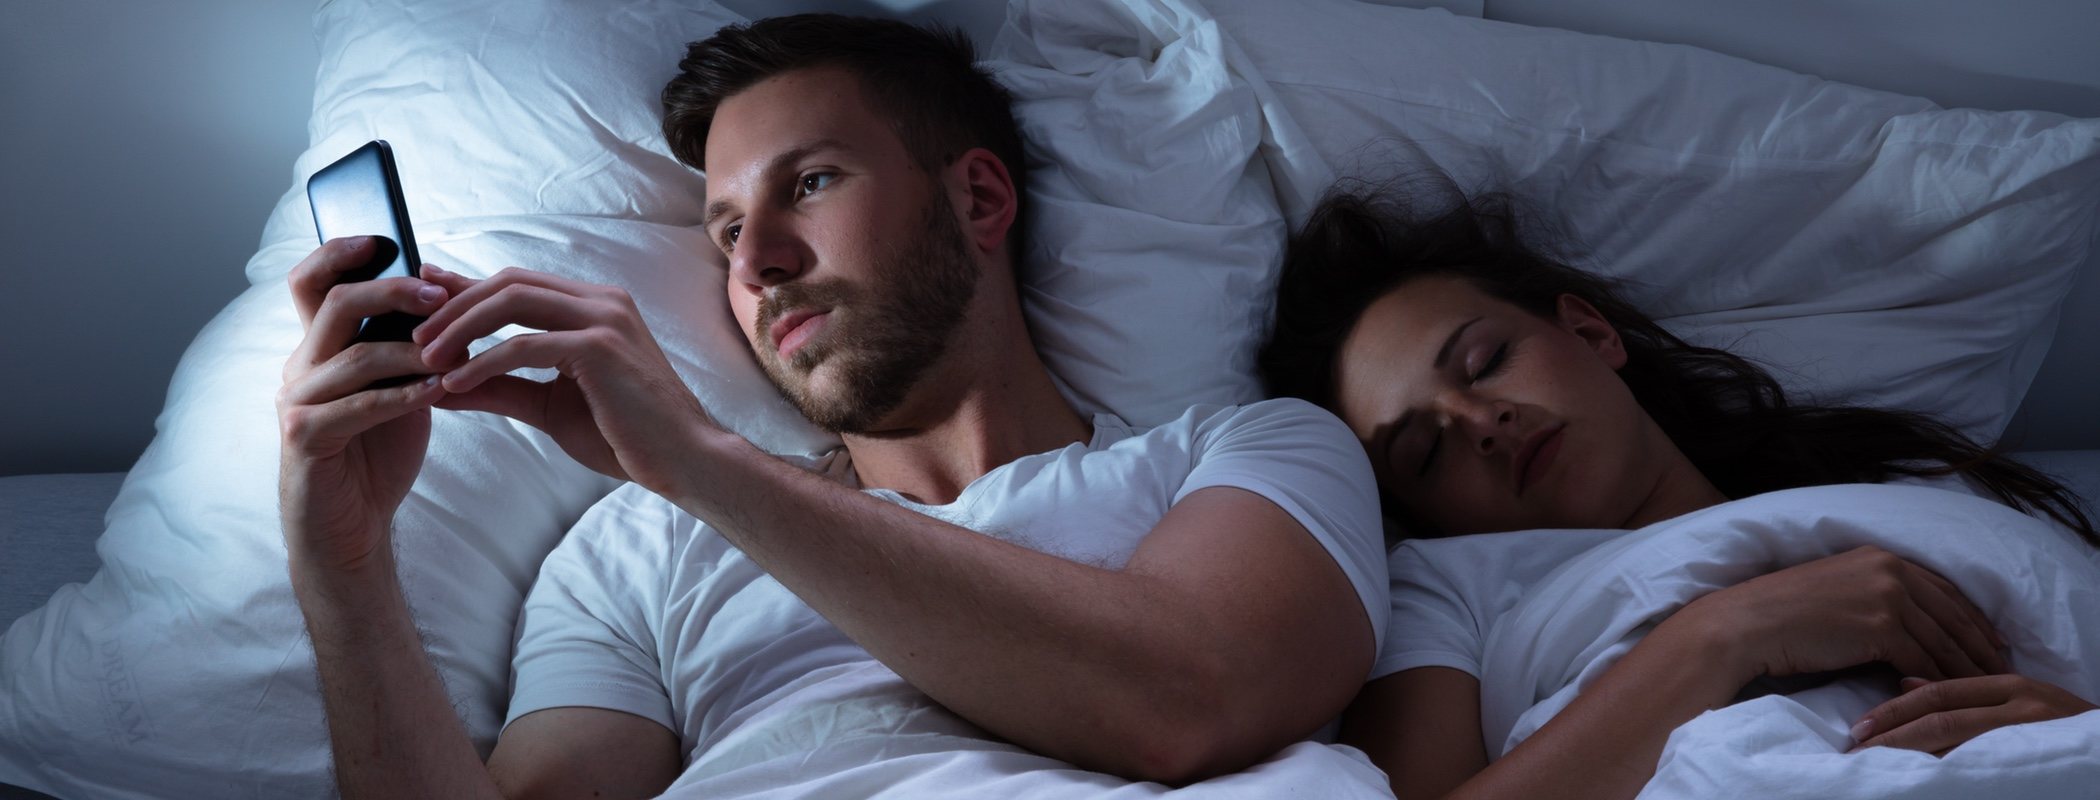 Cushioning: Descubre si tu pareja está a punto de engañarte